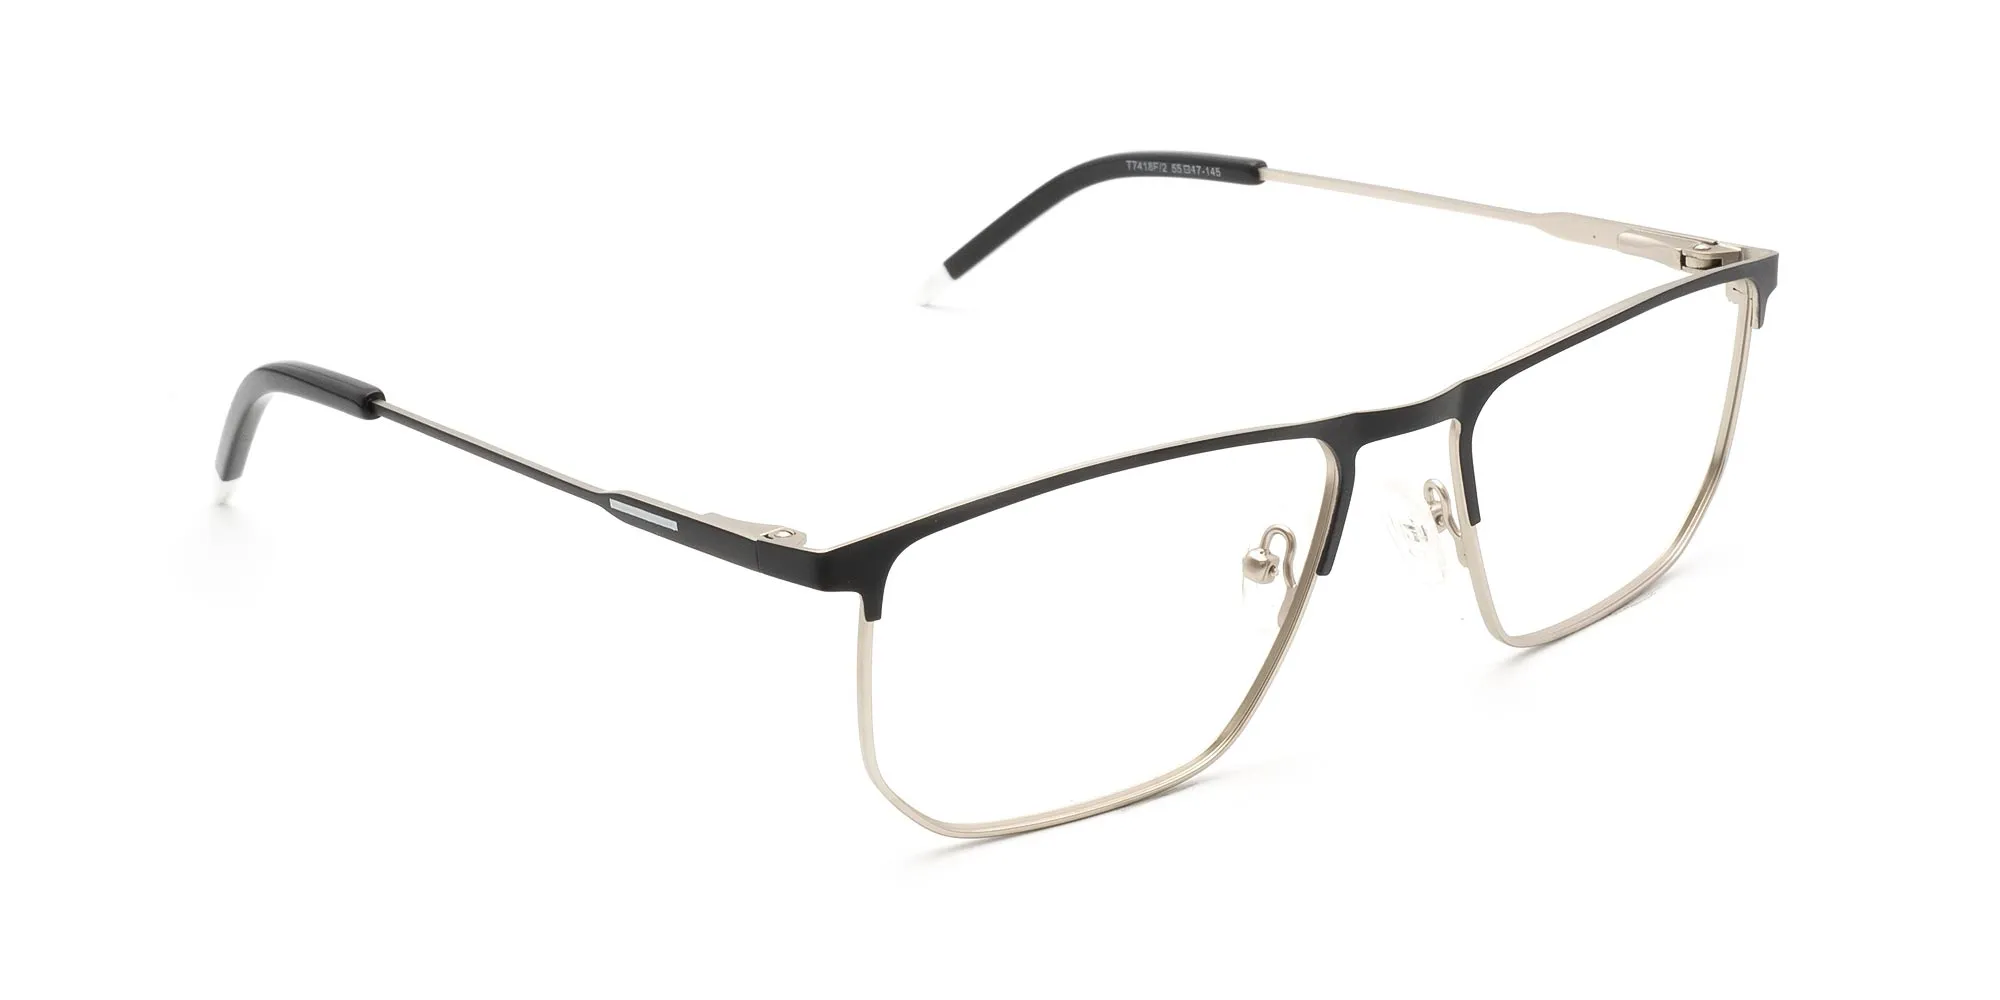 thin metal rim glasses